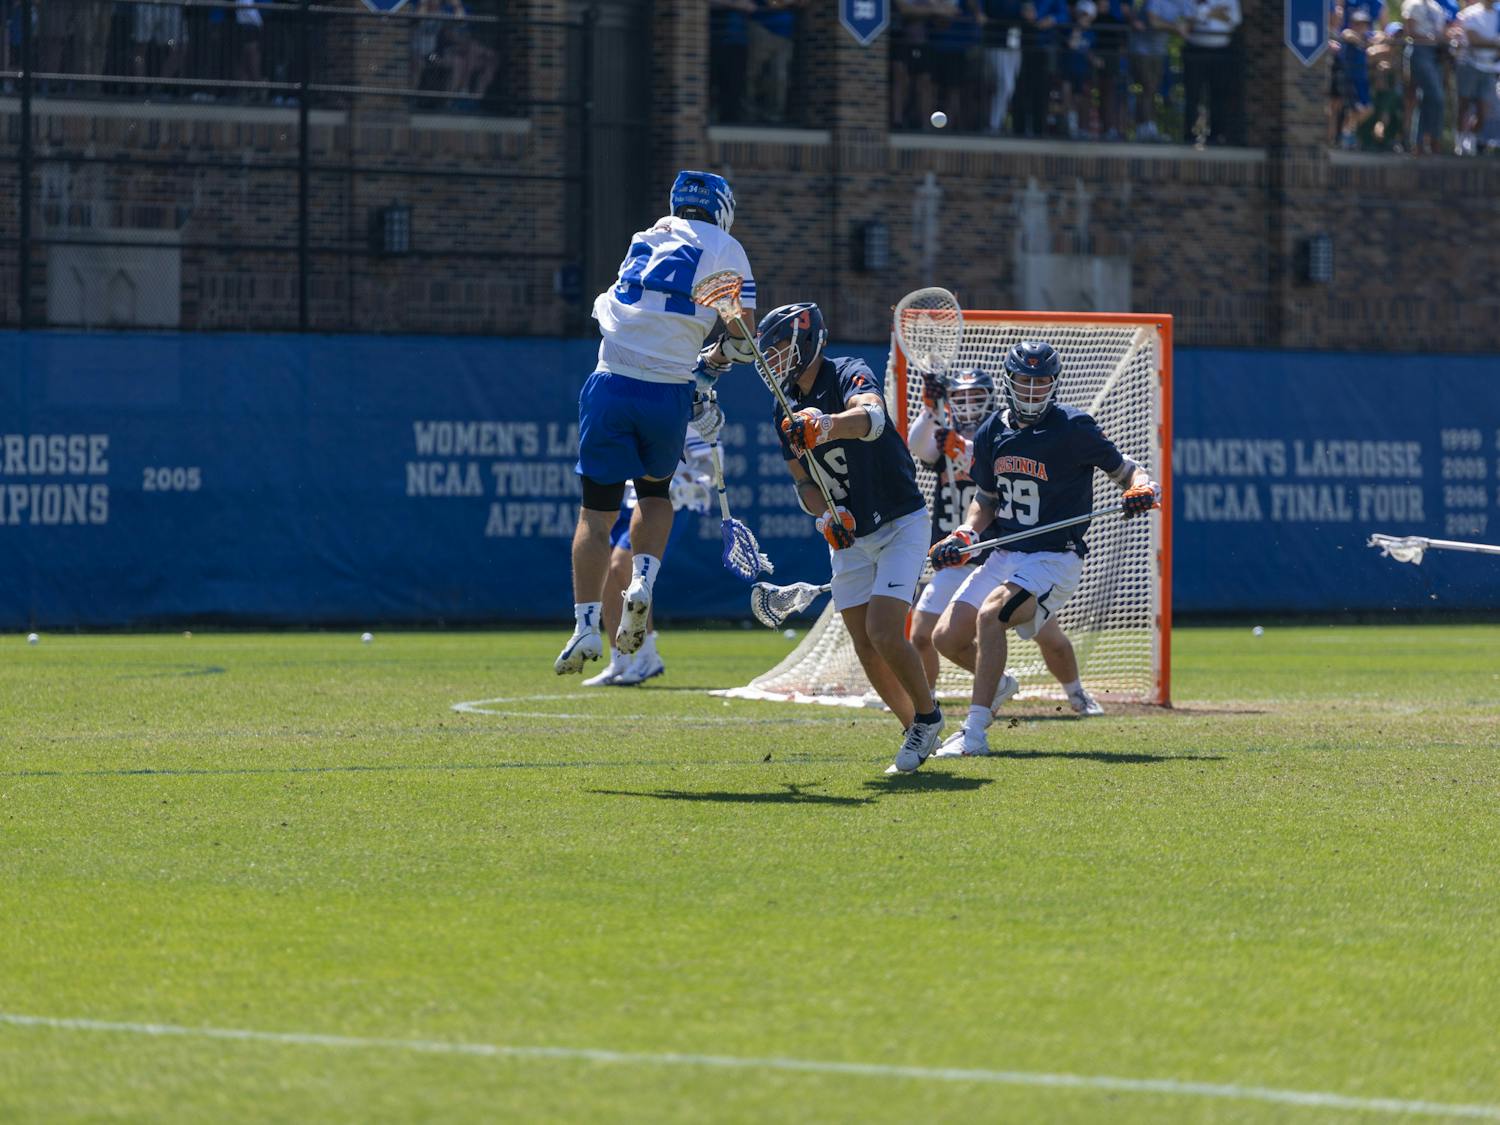 Senior attack Brennan O'Neill fires a shot for Duke men's lacrosse against Virginia.